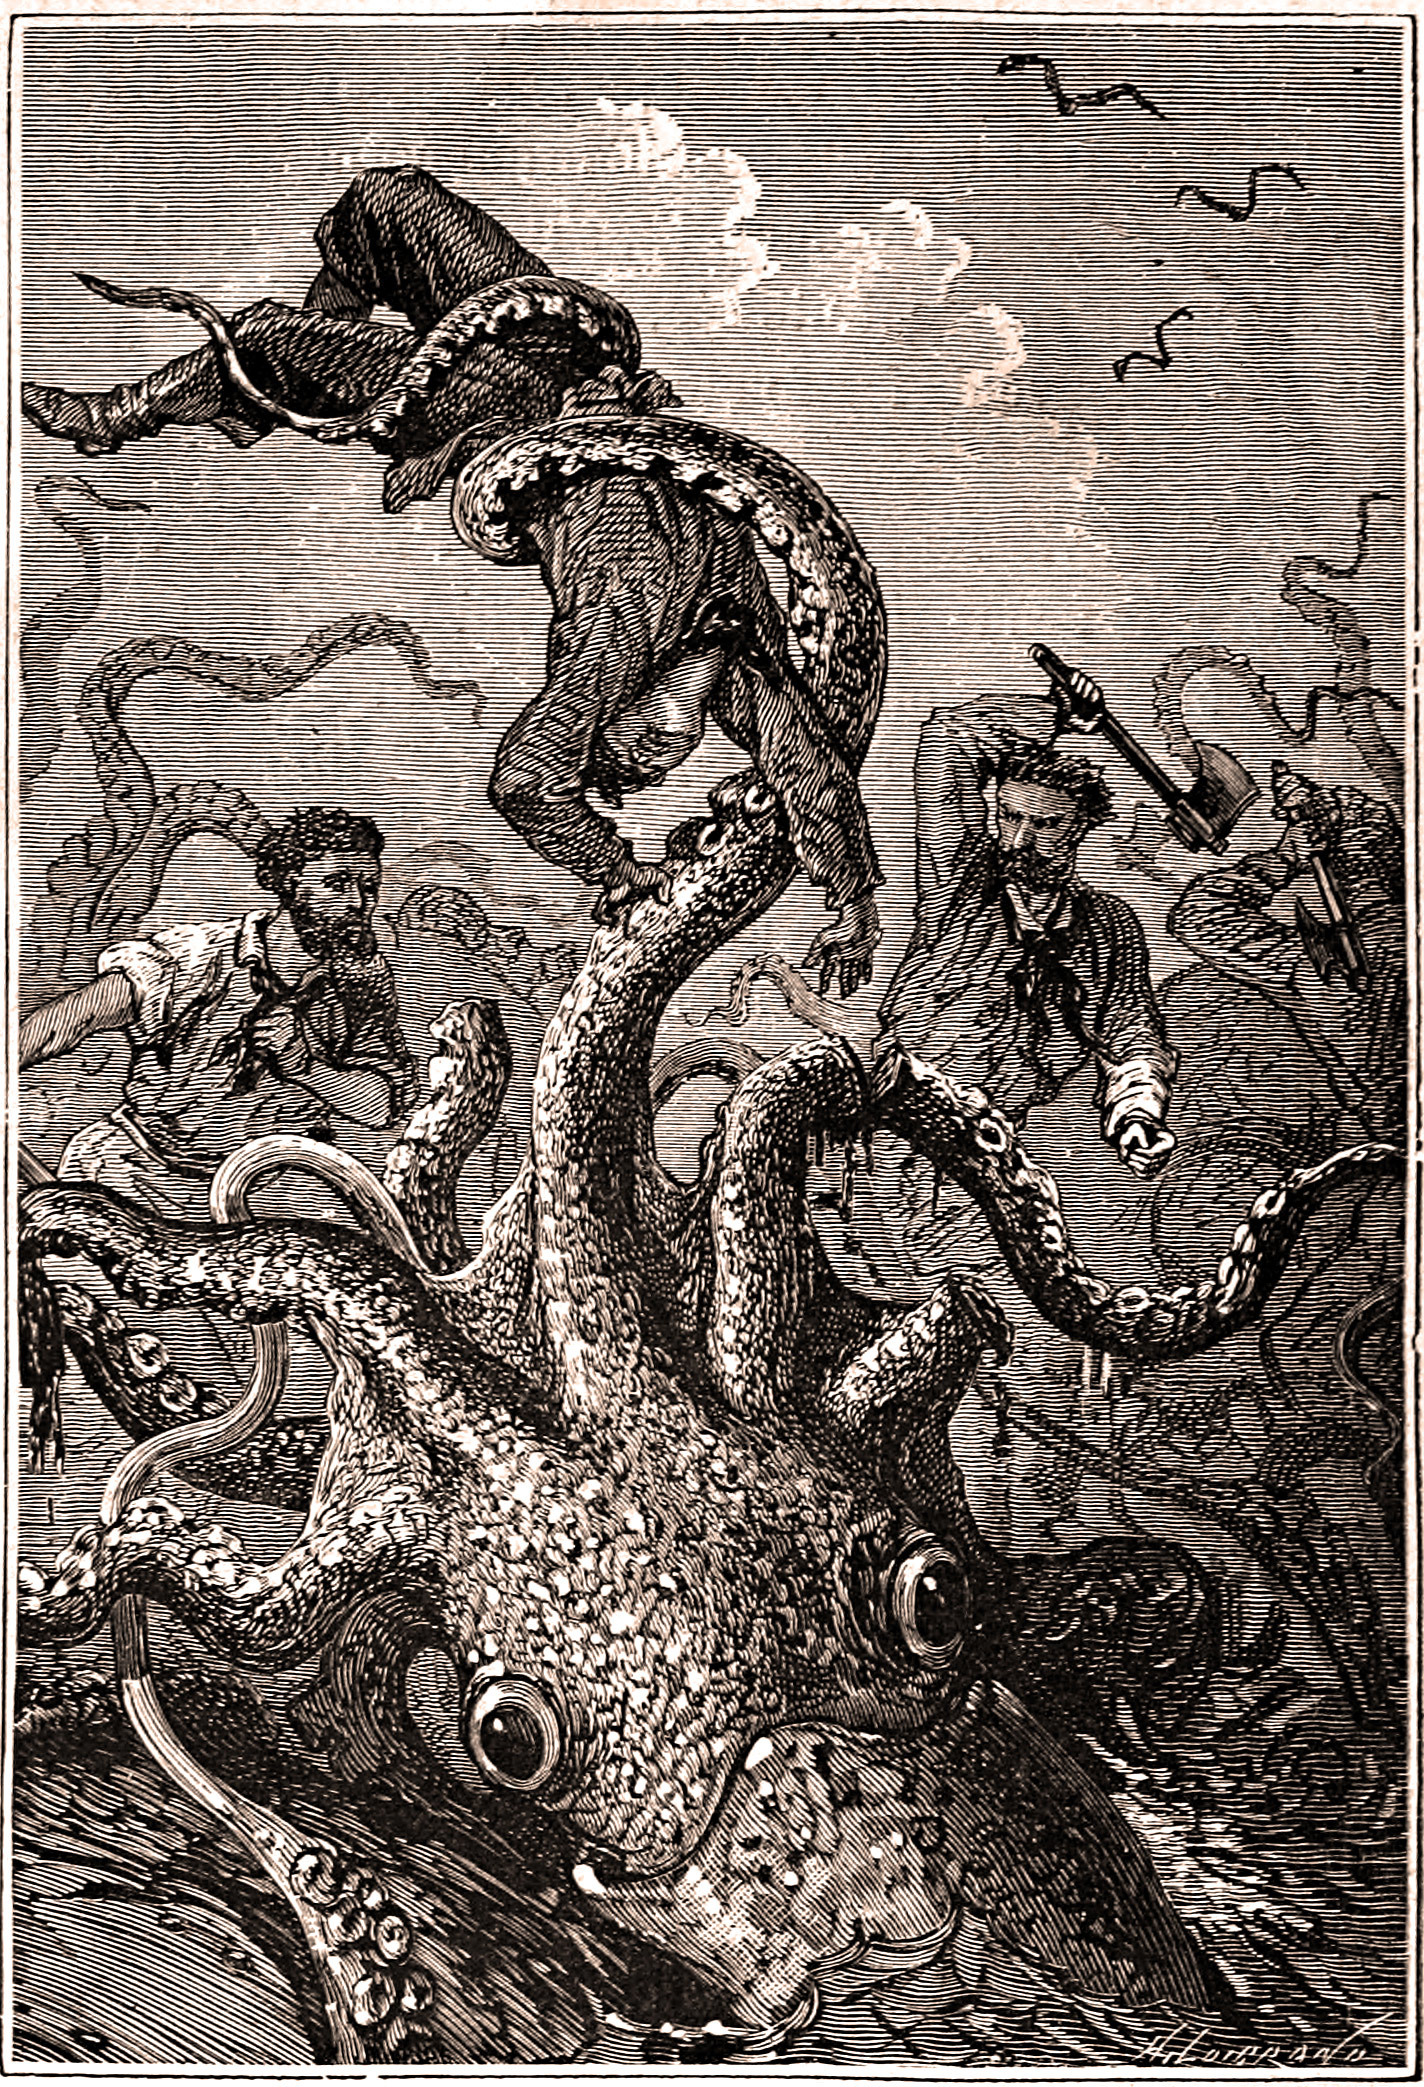 Ilustracin original de la novela '20.000 leguas de viaje submarino'.